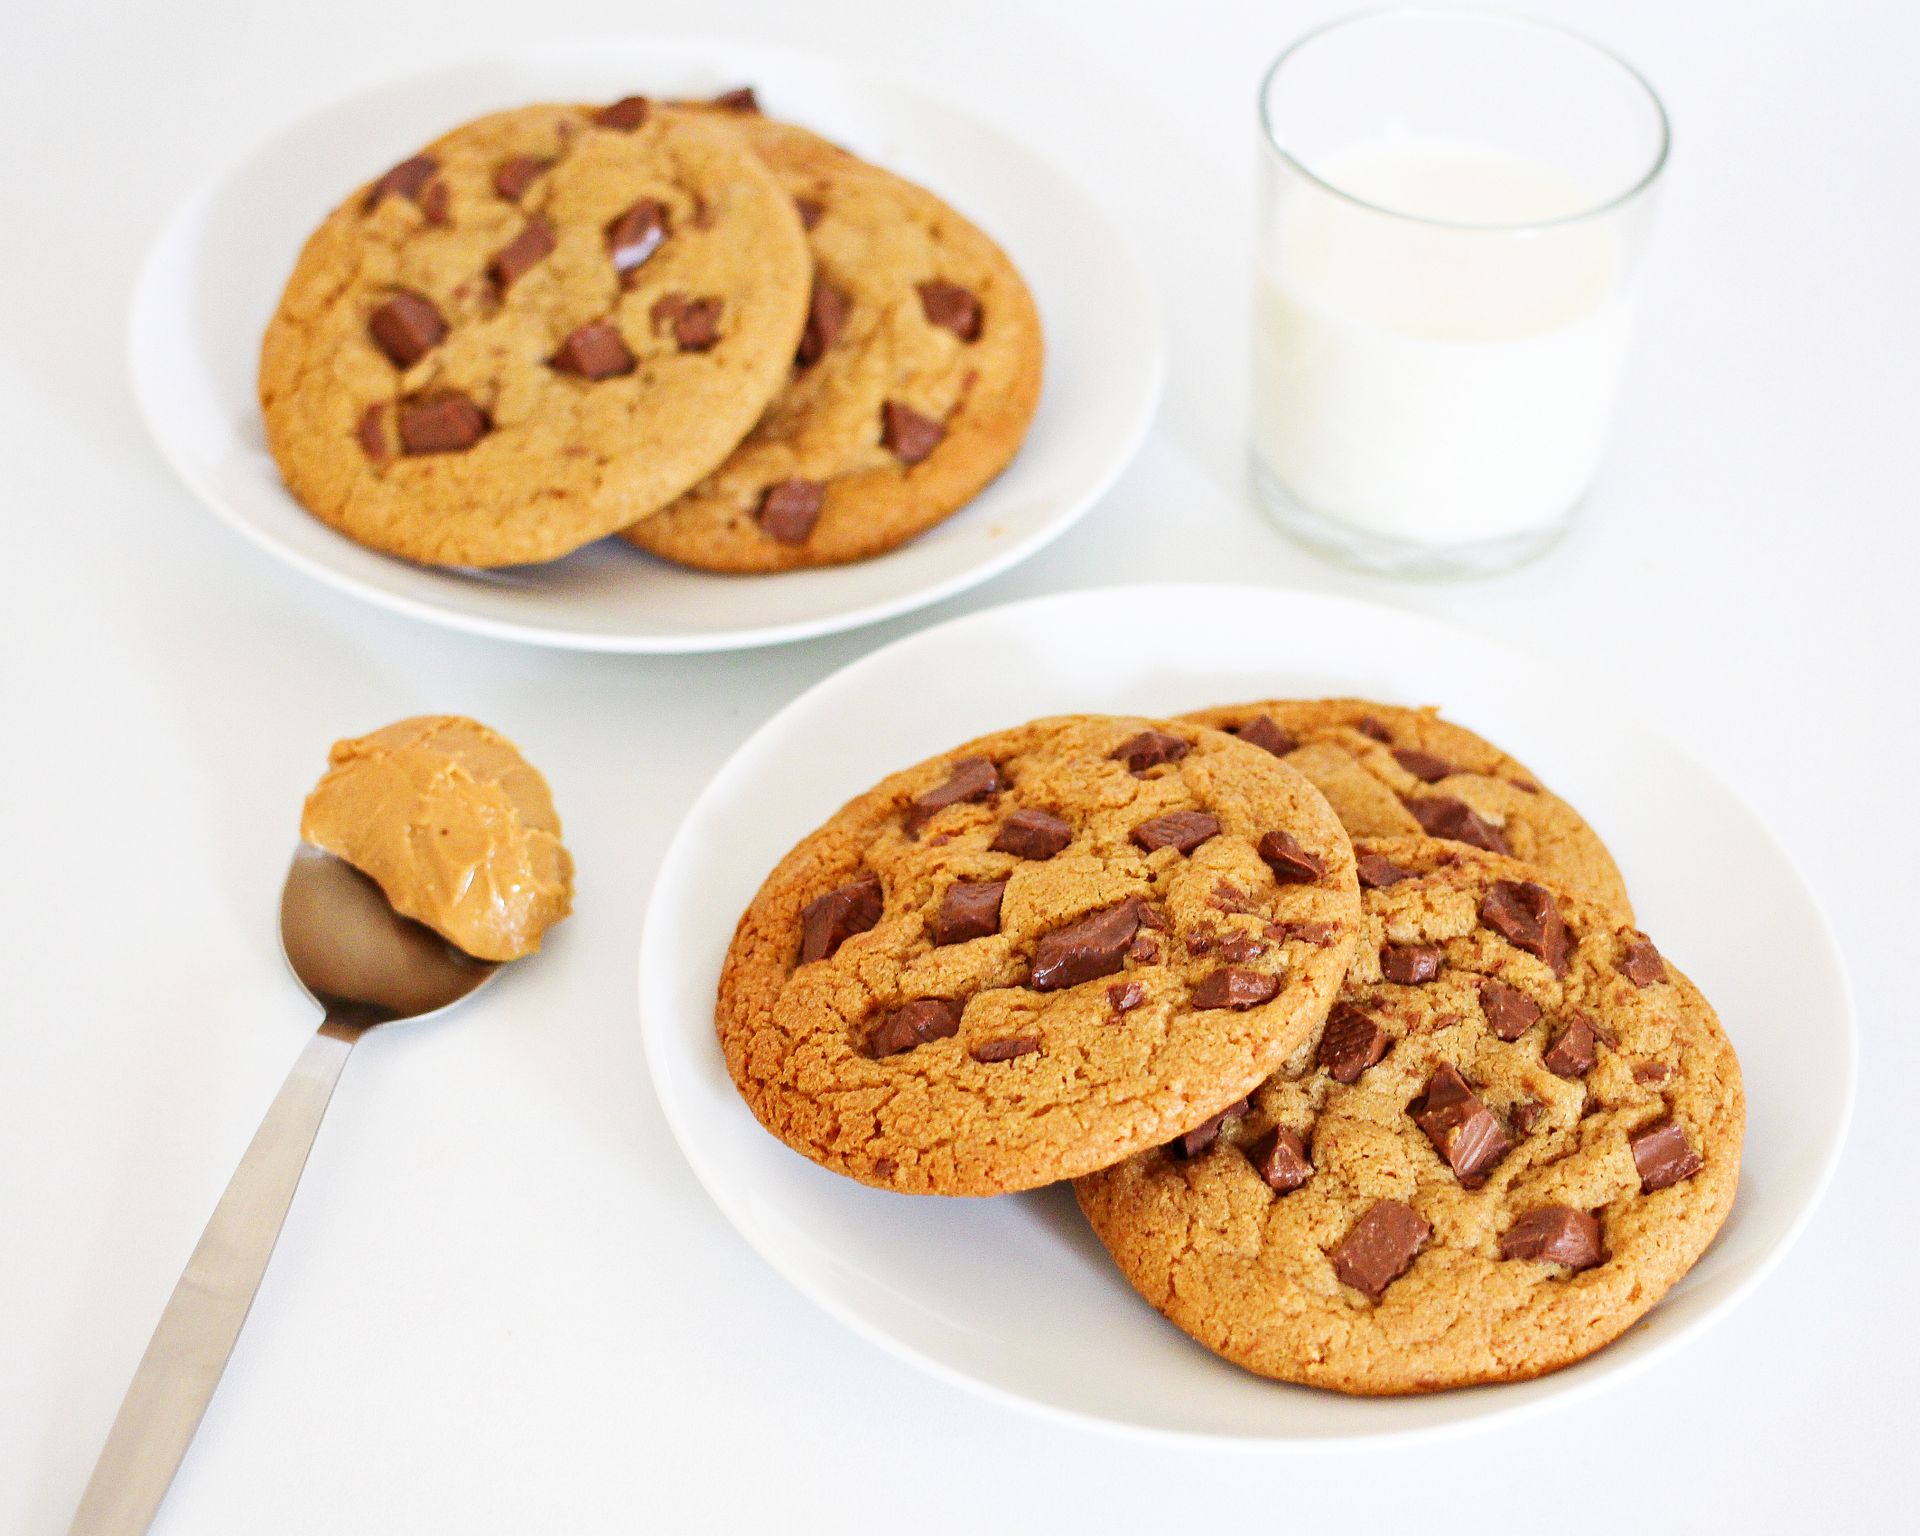 Čokoládové cookies v dvoch porciách. K tomu lyžička arašidového masla a pohár mlieka.